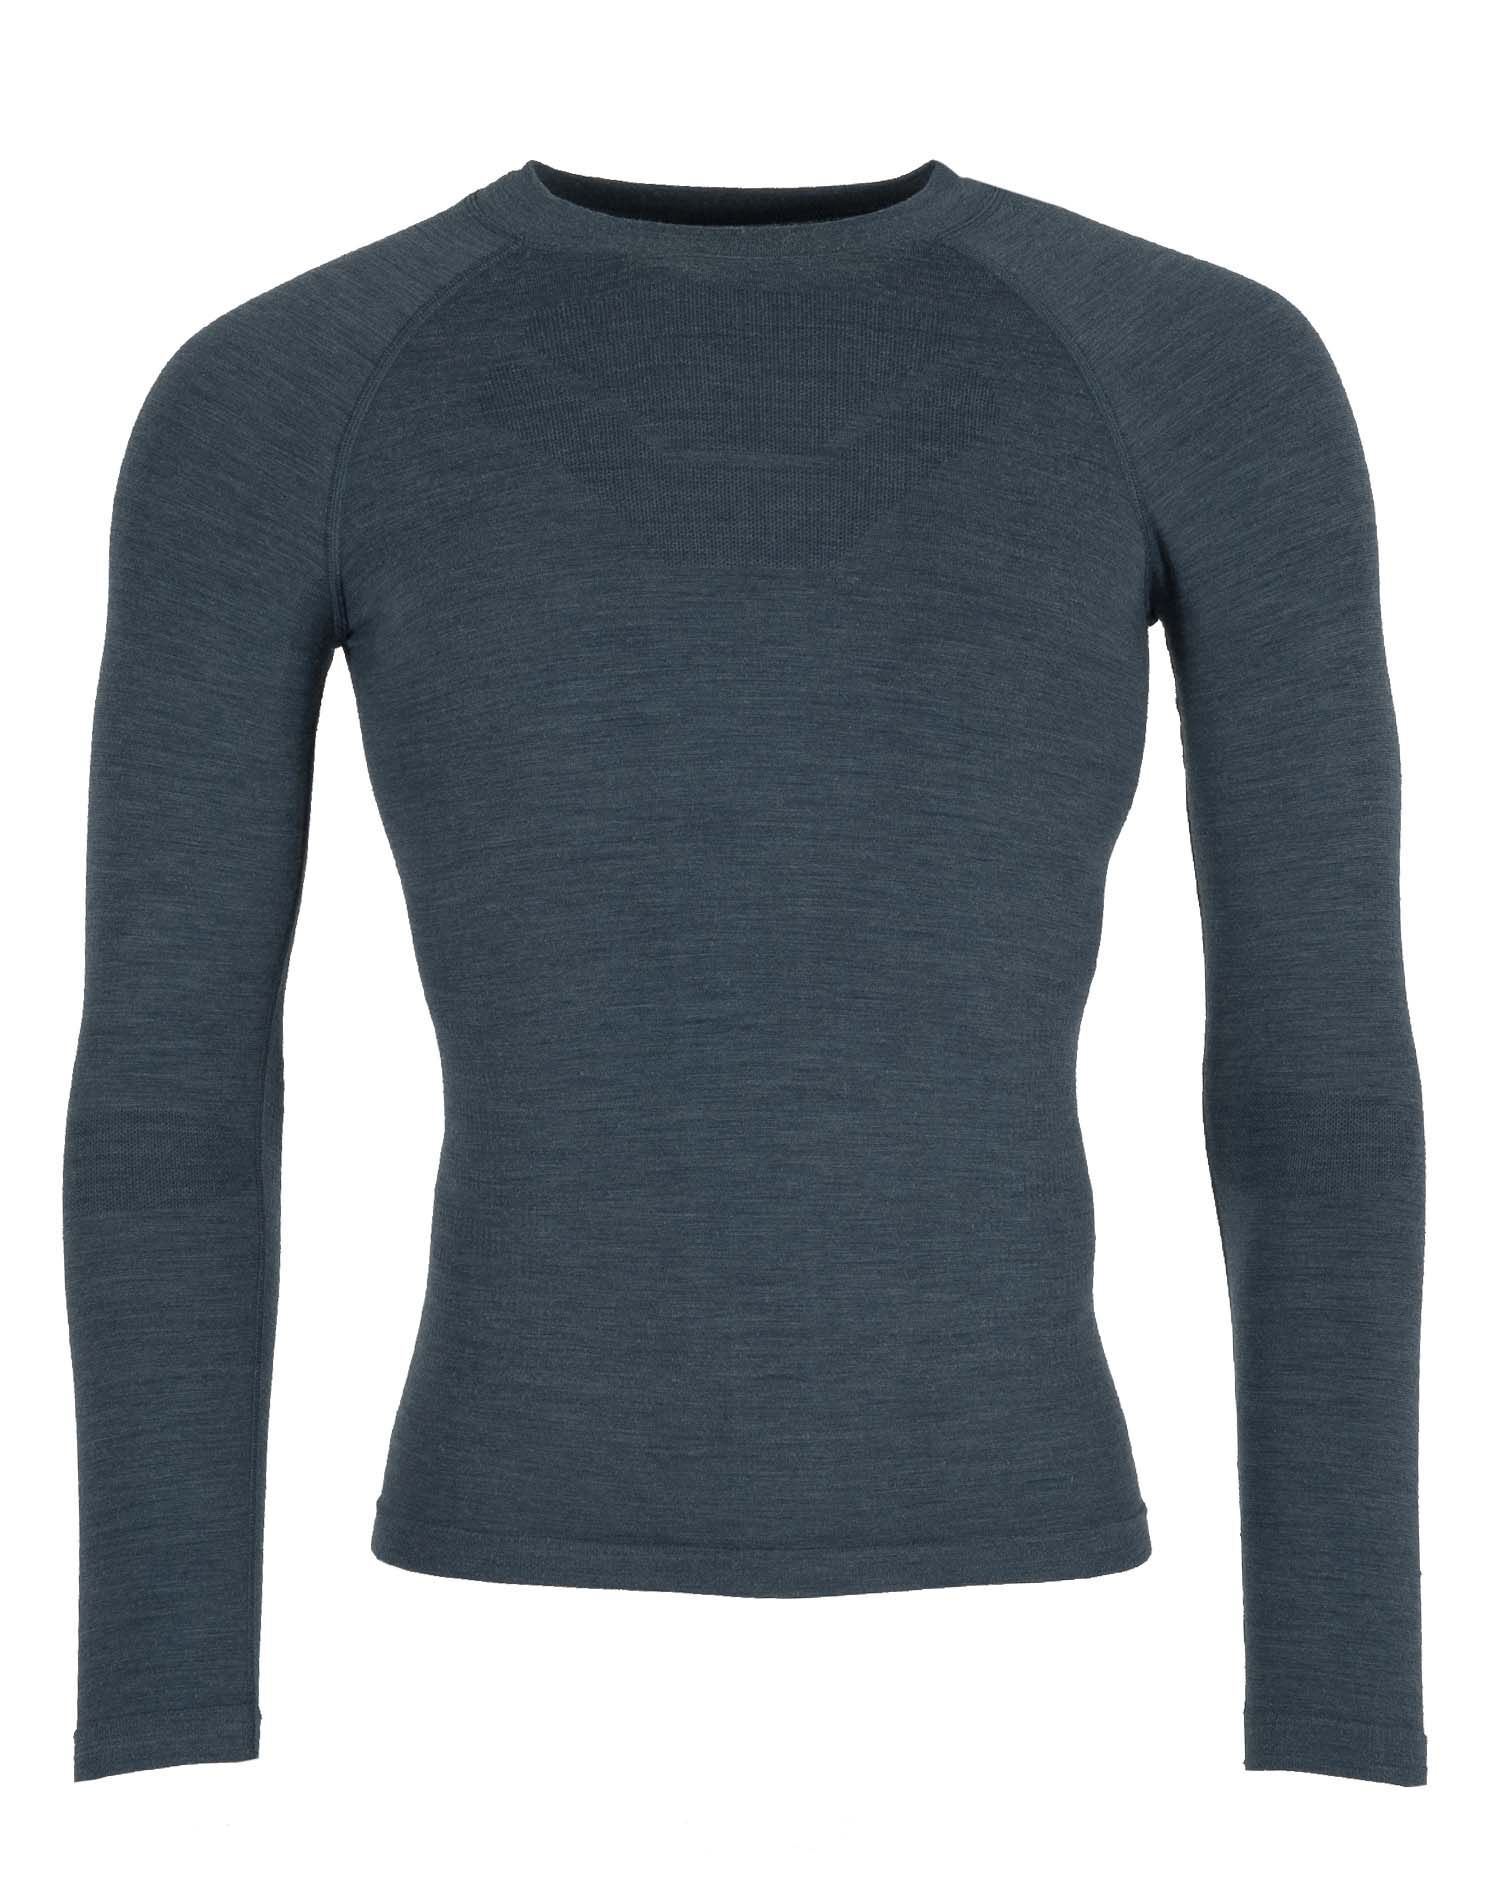 Ternua Paine T-Shirt - Maglietta termica - Uomo